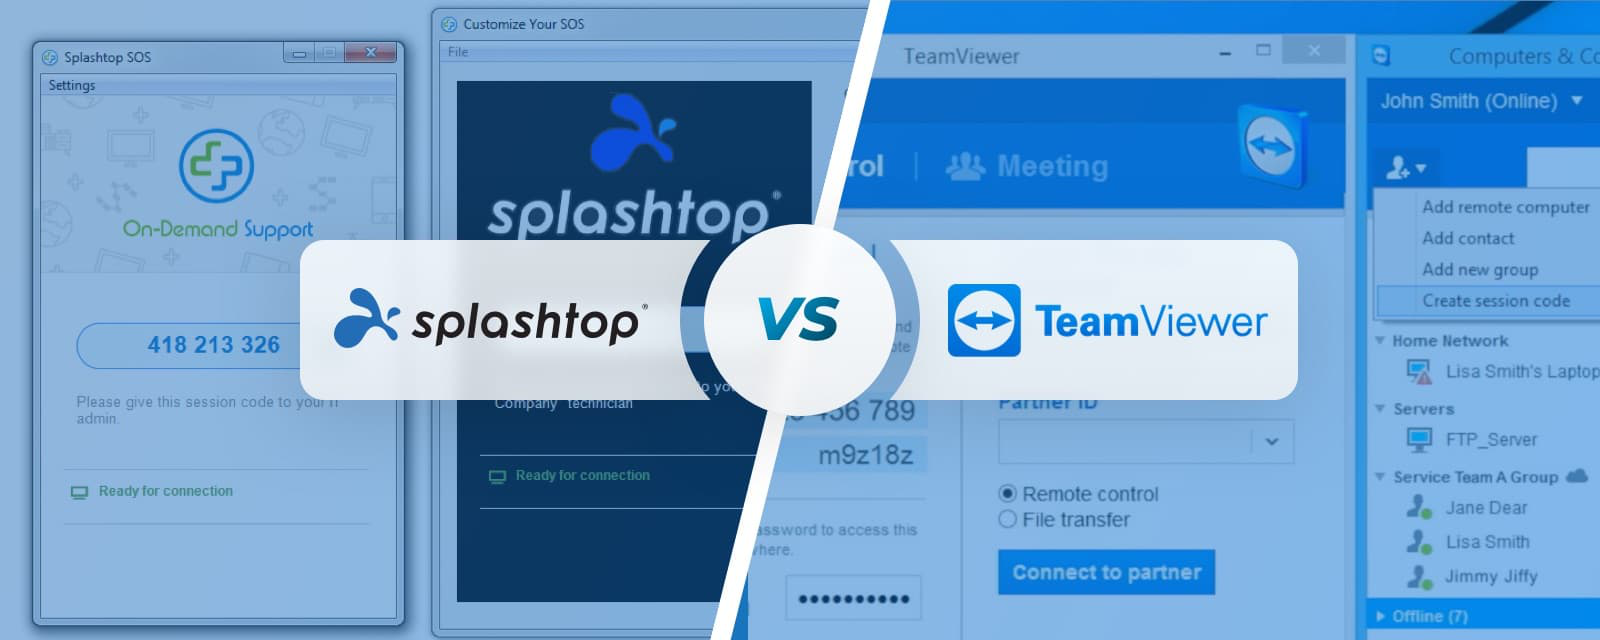 teamviewer vs splashtop